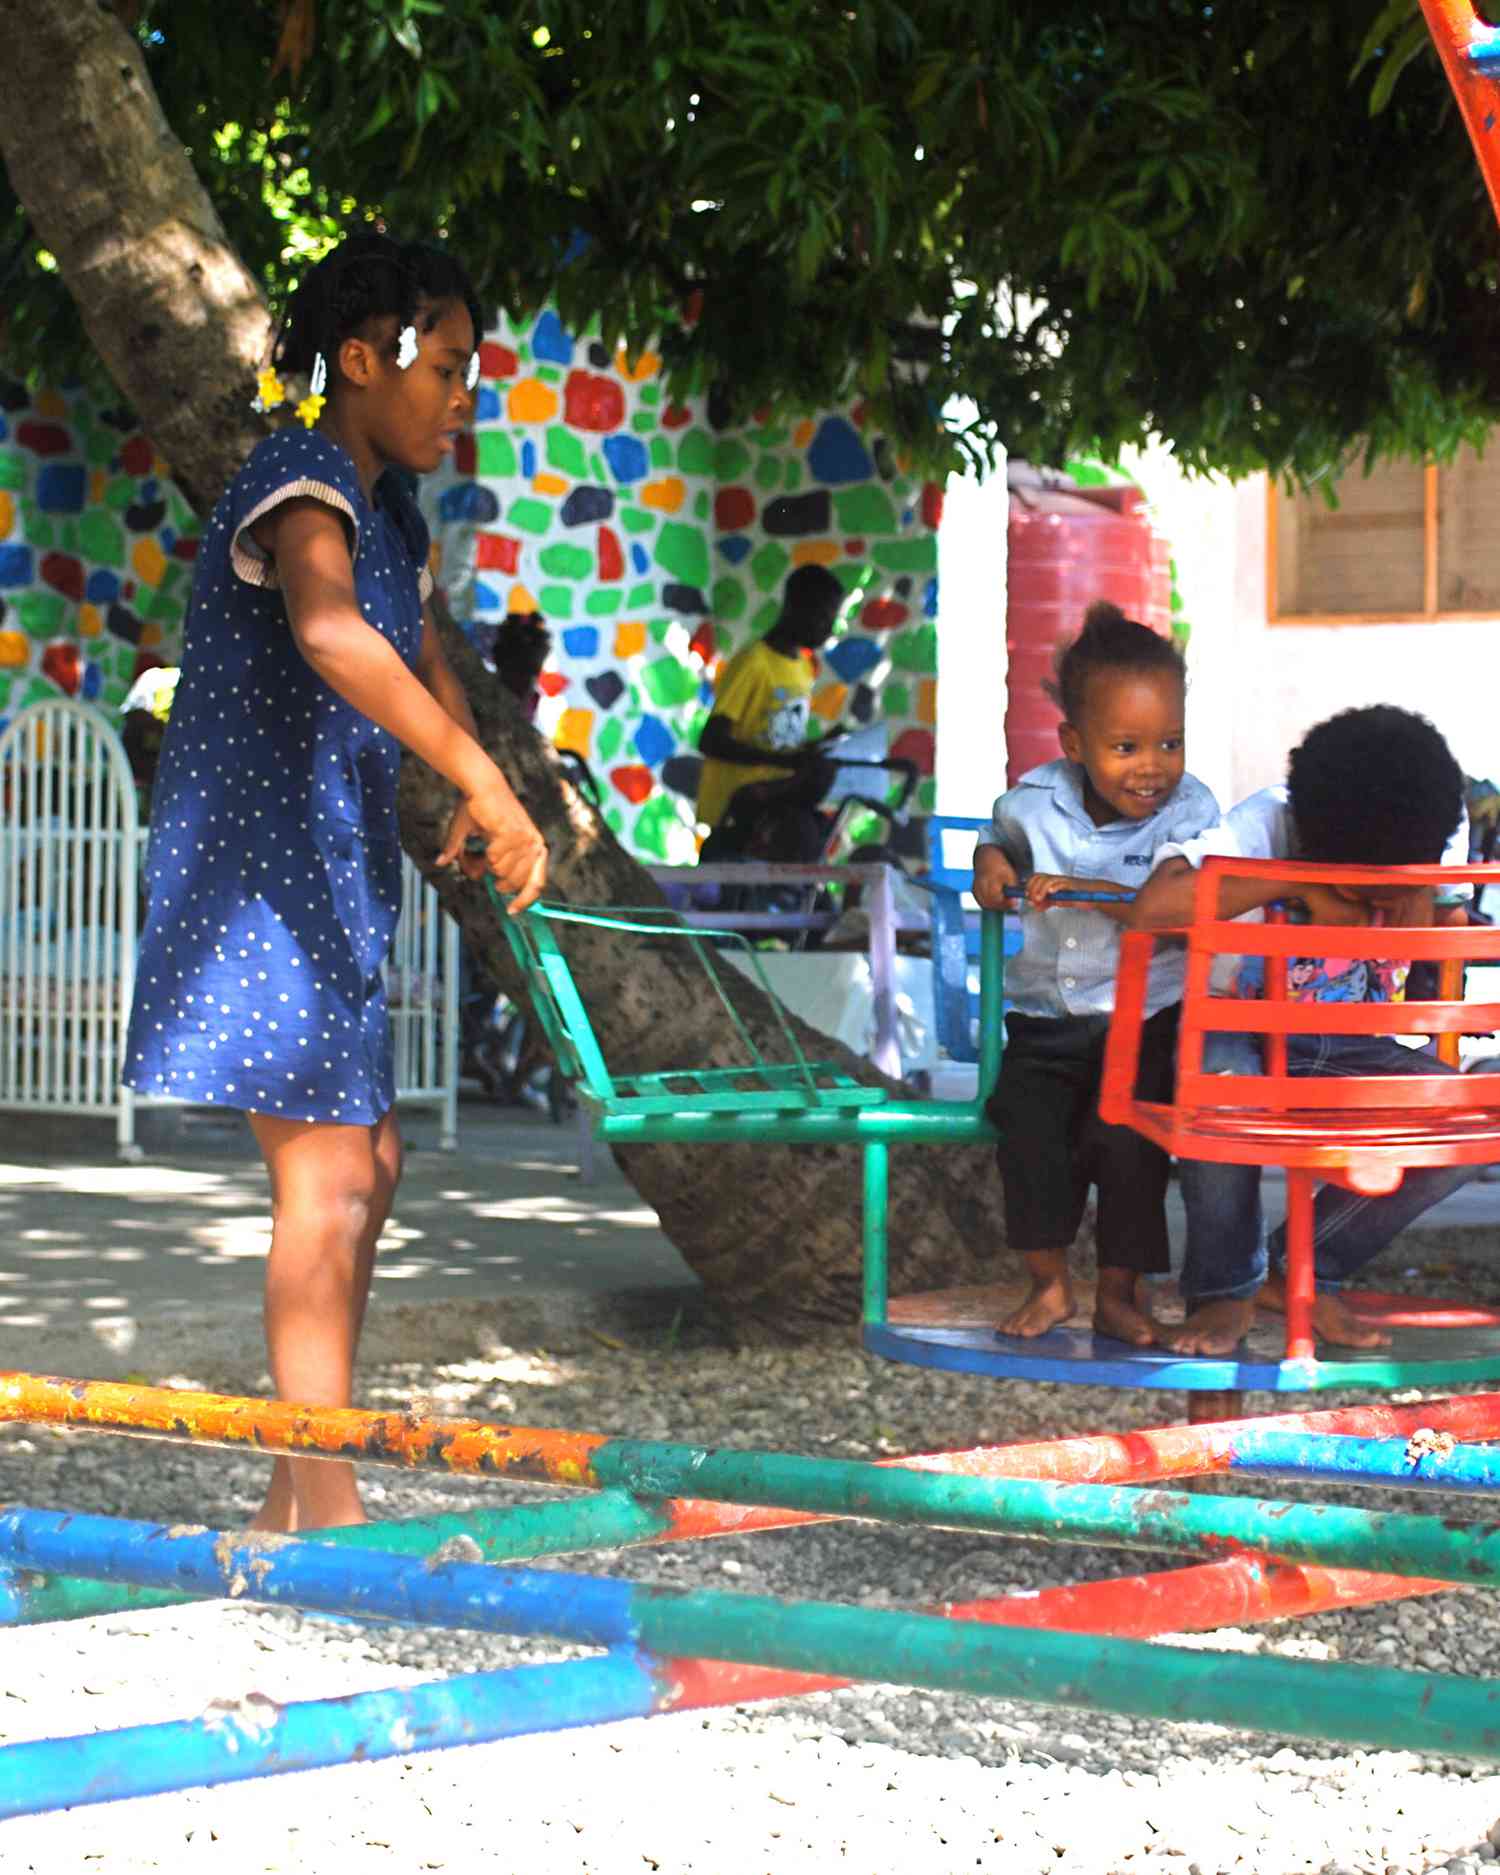 handinhand-haiti-playground-1114.jpg